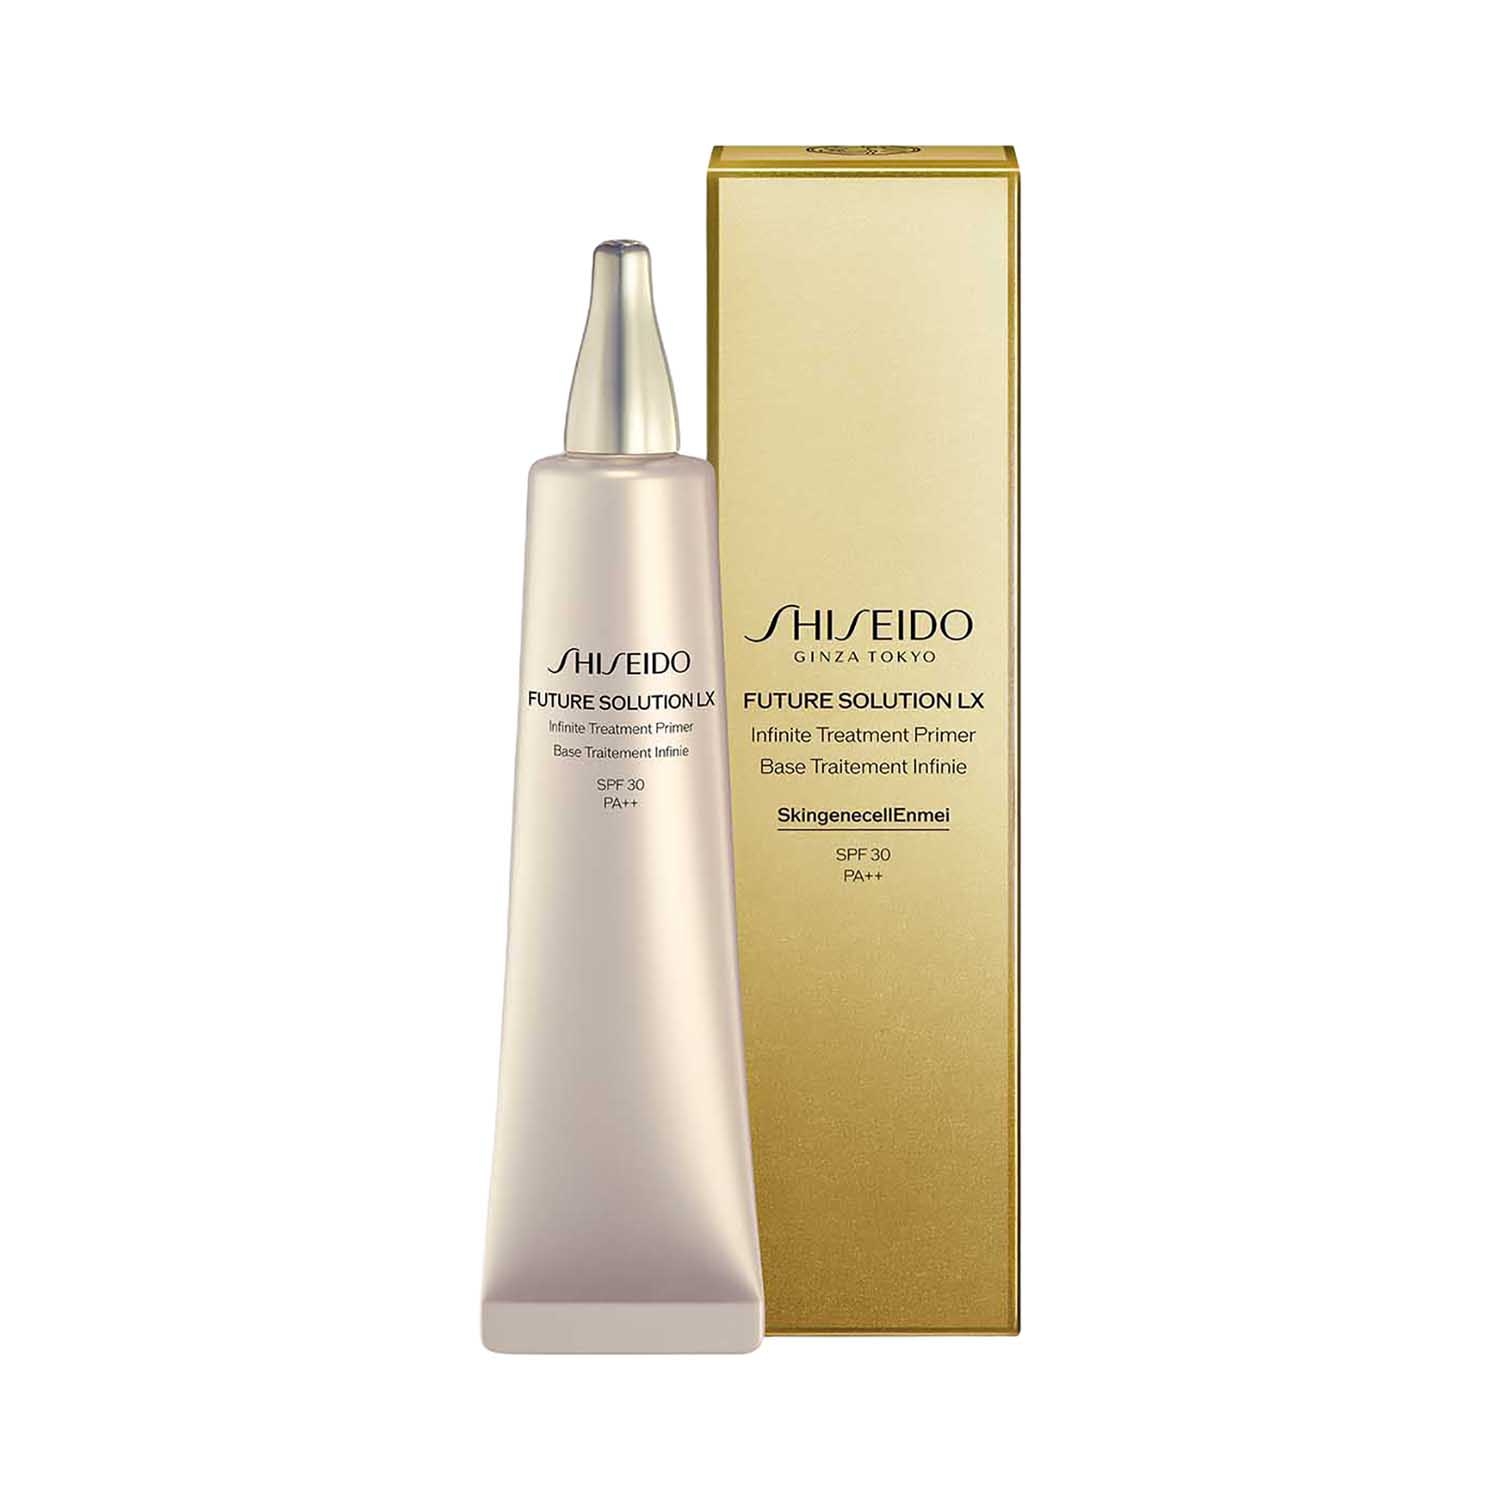 Shiseido Future Solution LX Infinite Treatment Primer (40ml)